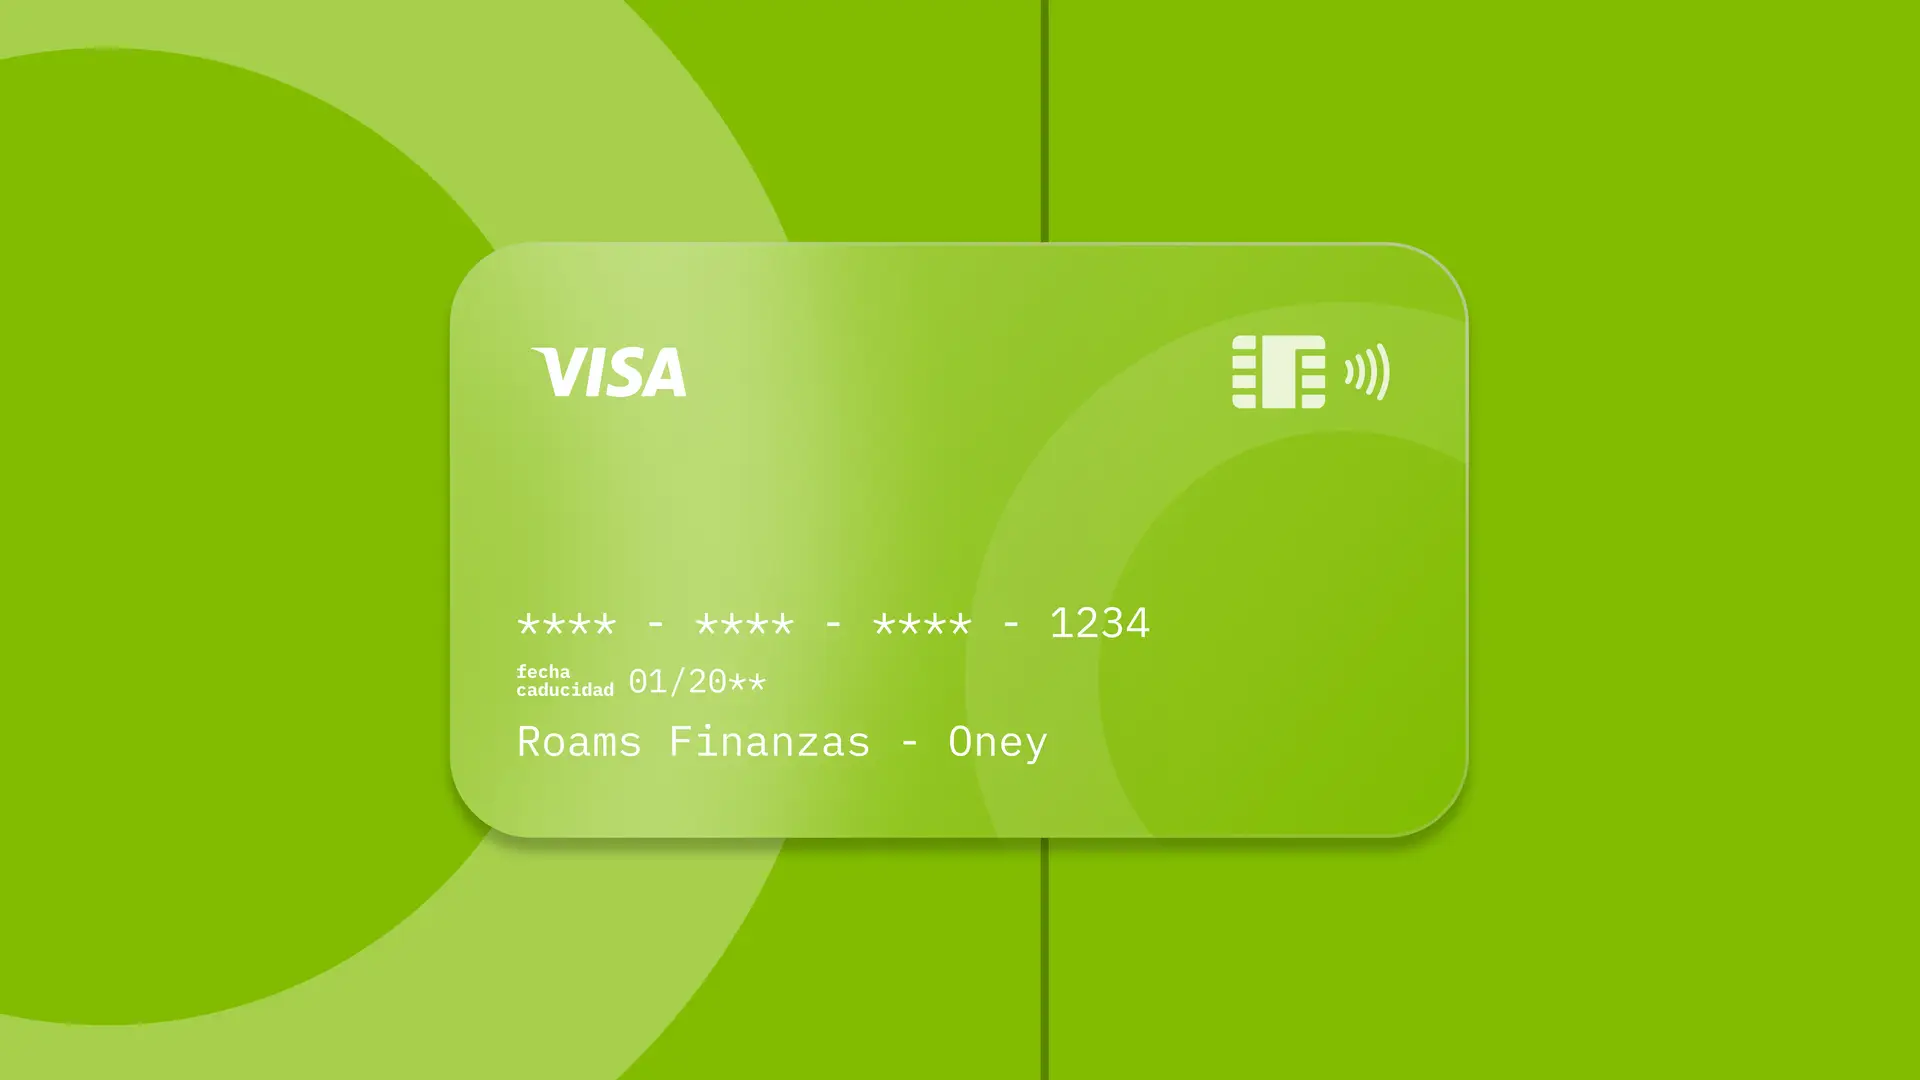 Simulación de una tarjeta de la entidad financiera Oney creada por Roams.